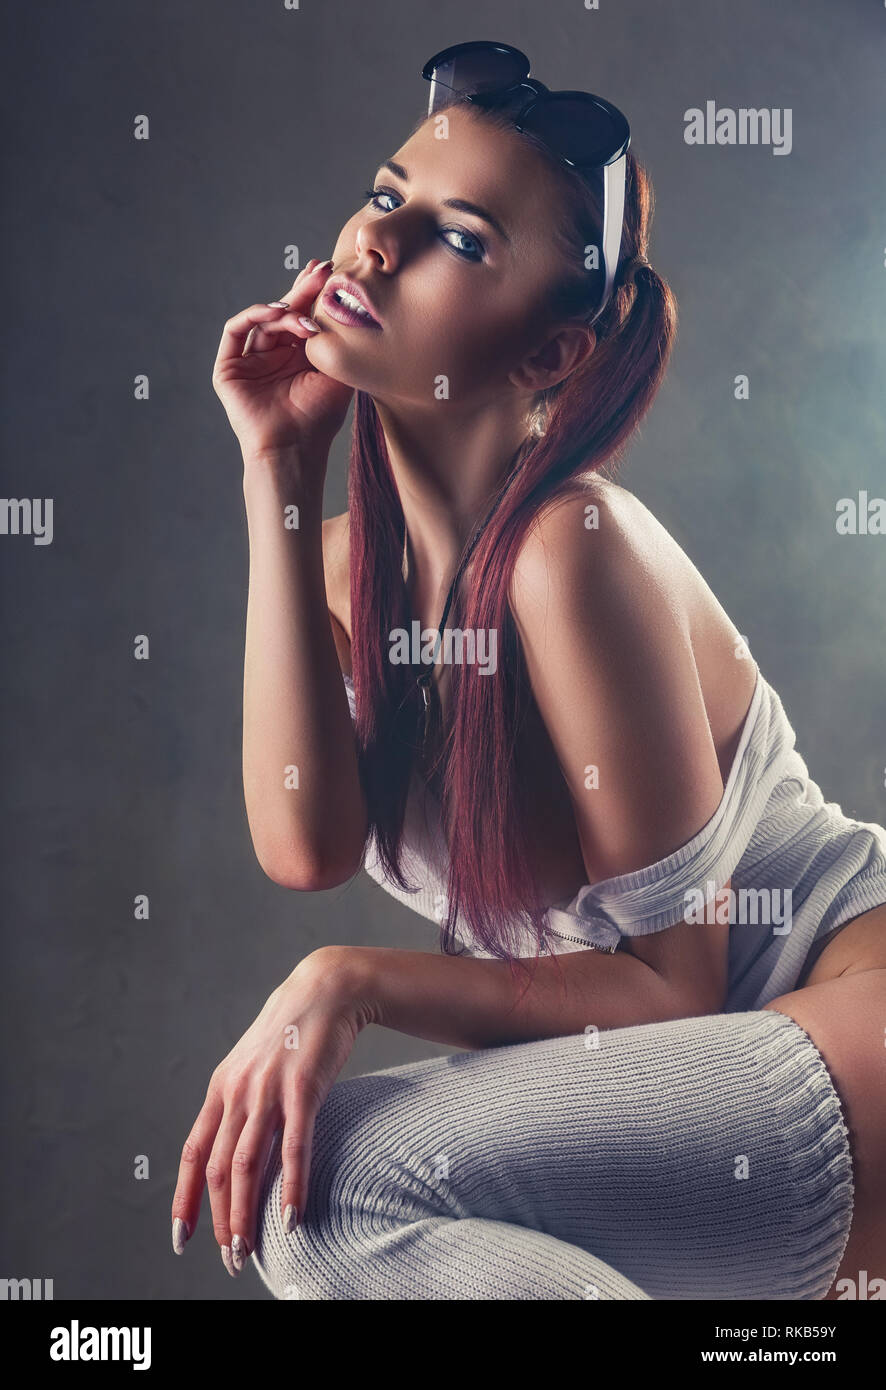 Sexy séduisante jeune fille rousse sur fond sombre Photo Stock - Alamy